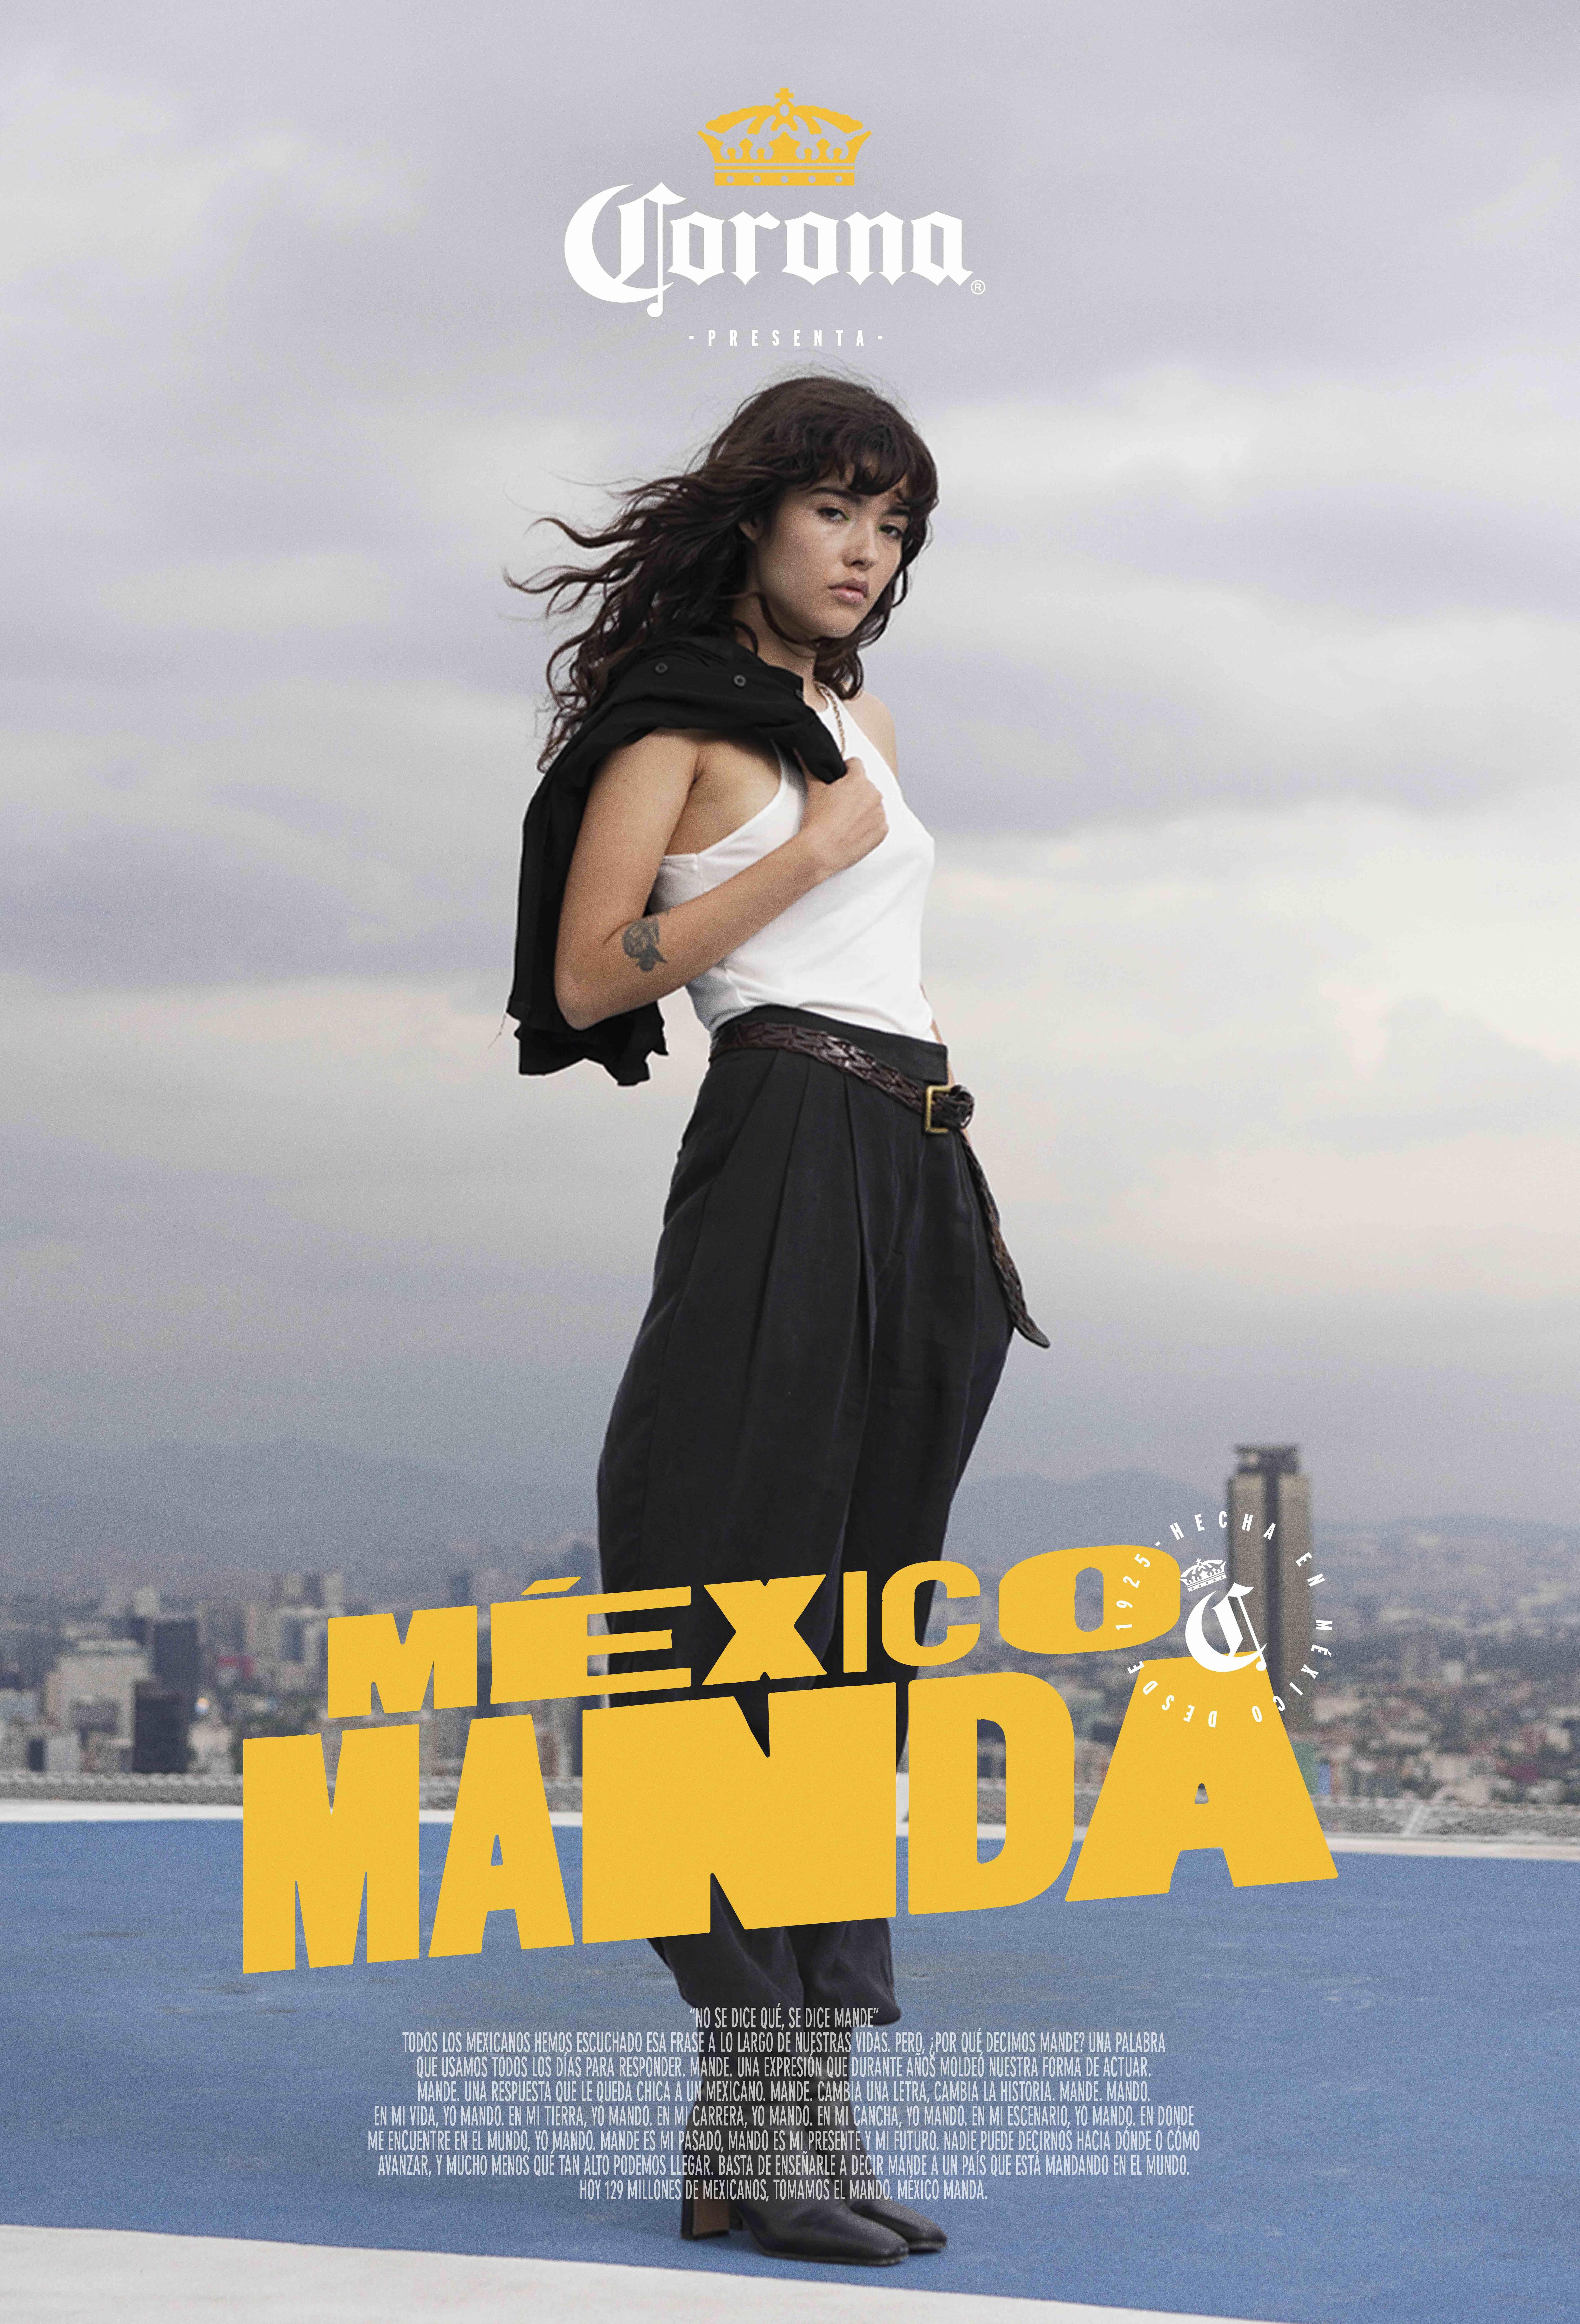 Corona presenta “México manda” La campaña que prueba que el espíritu mexicano puede conquistar el mundo